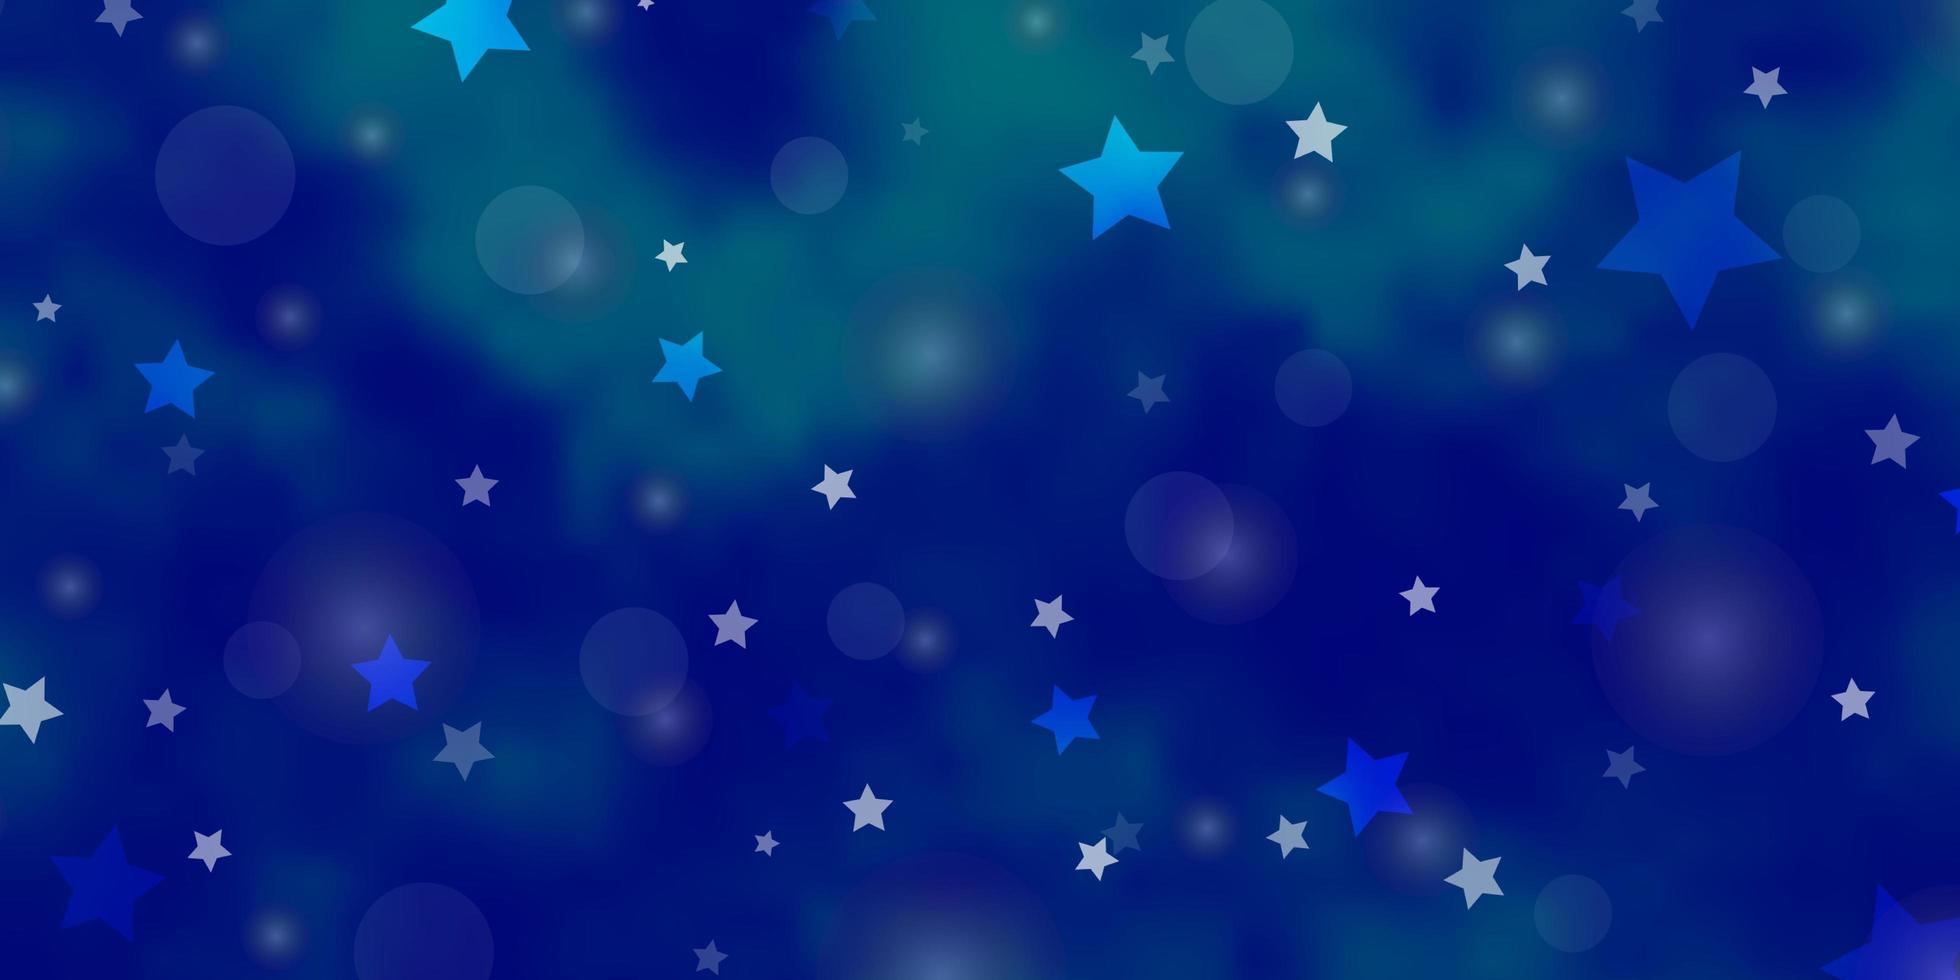 modelo de vetor azul claro com círculos, estrelas. ilustração abstrata com manchas coloridas, estrelas. textura para persianas, cortinas.